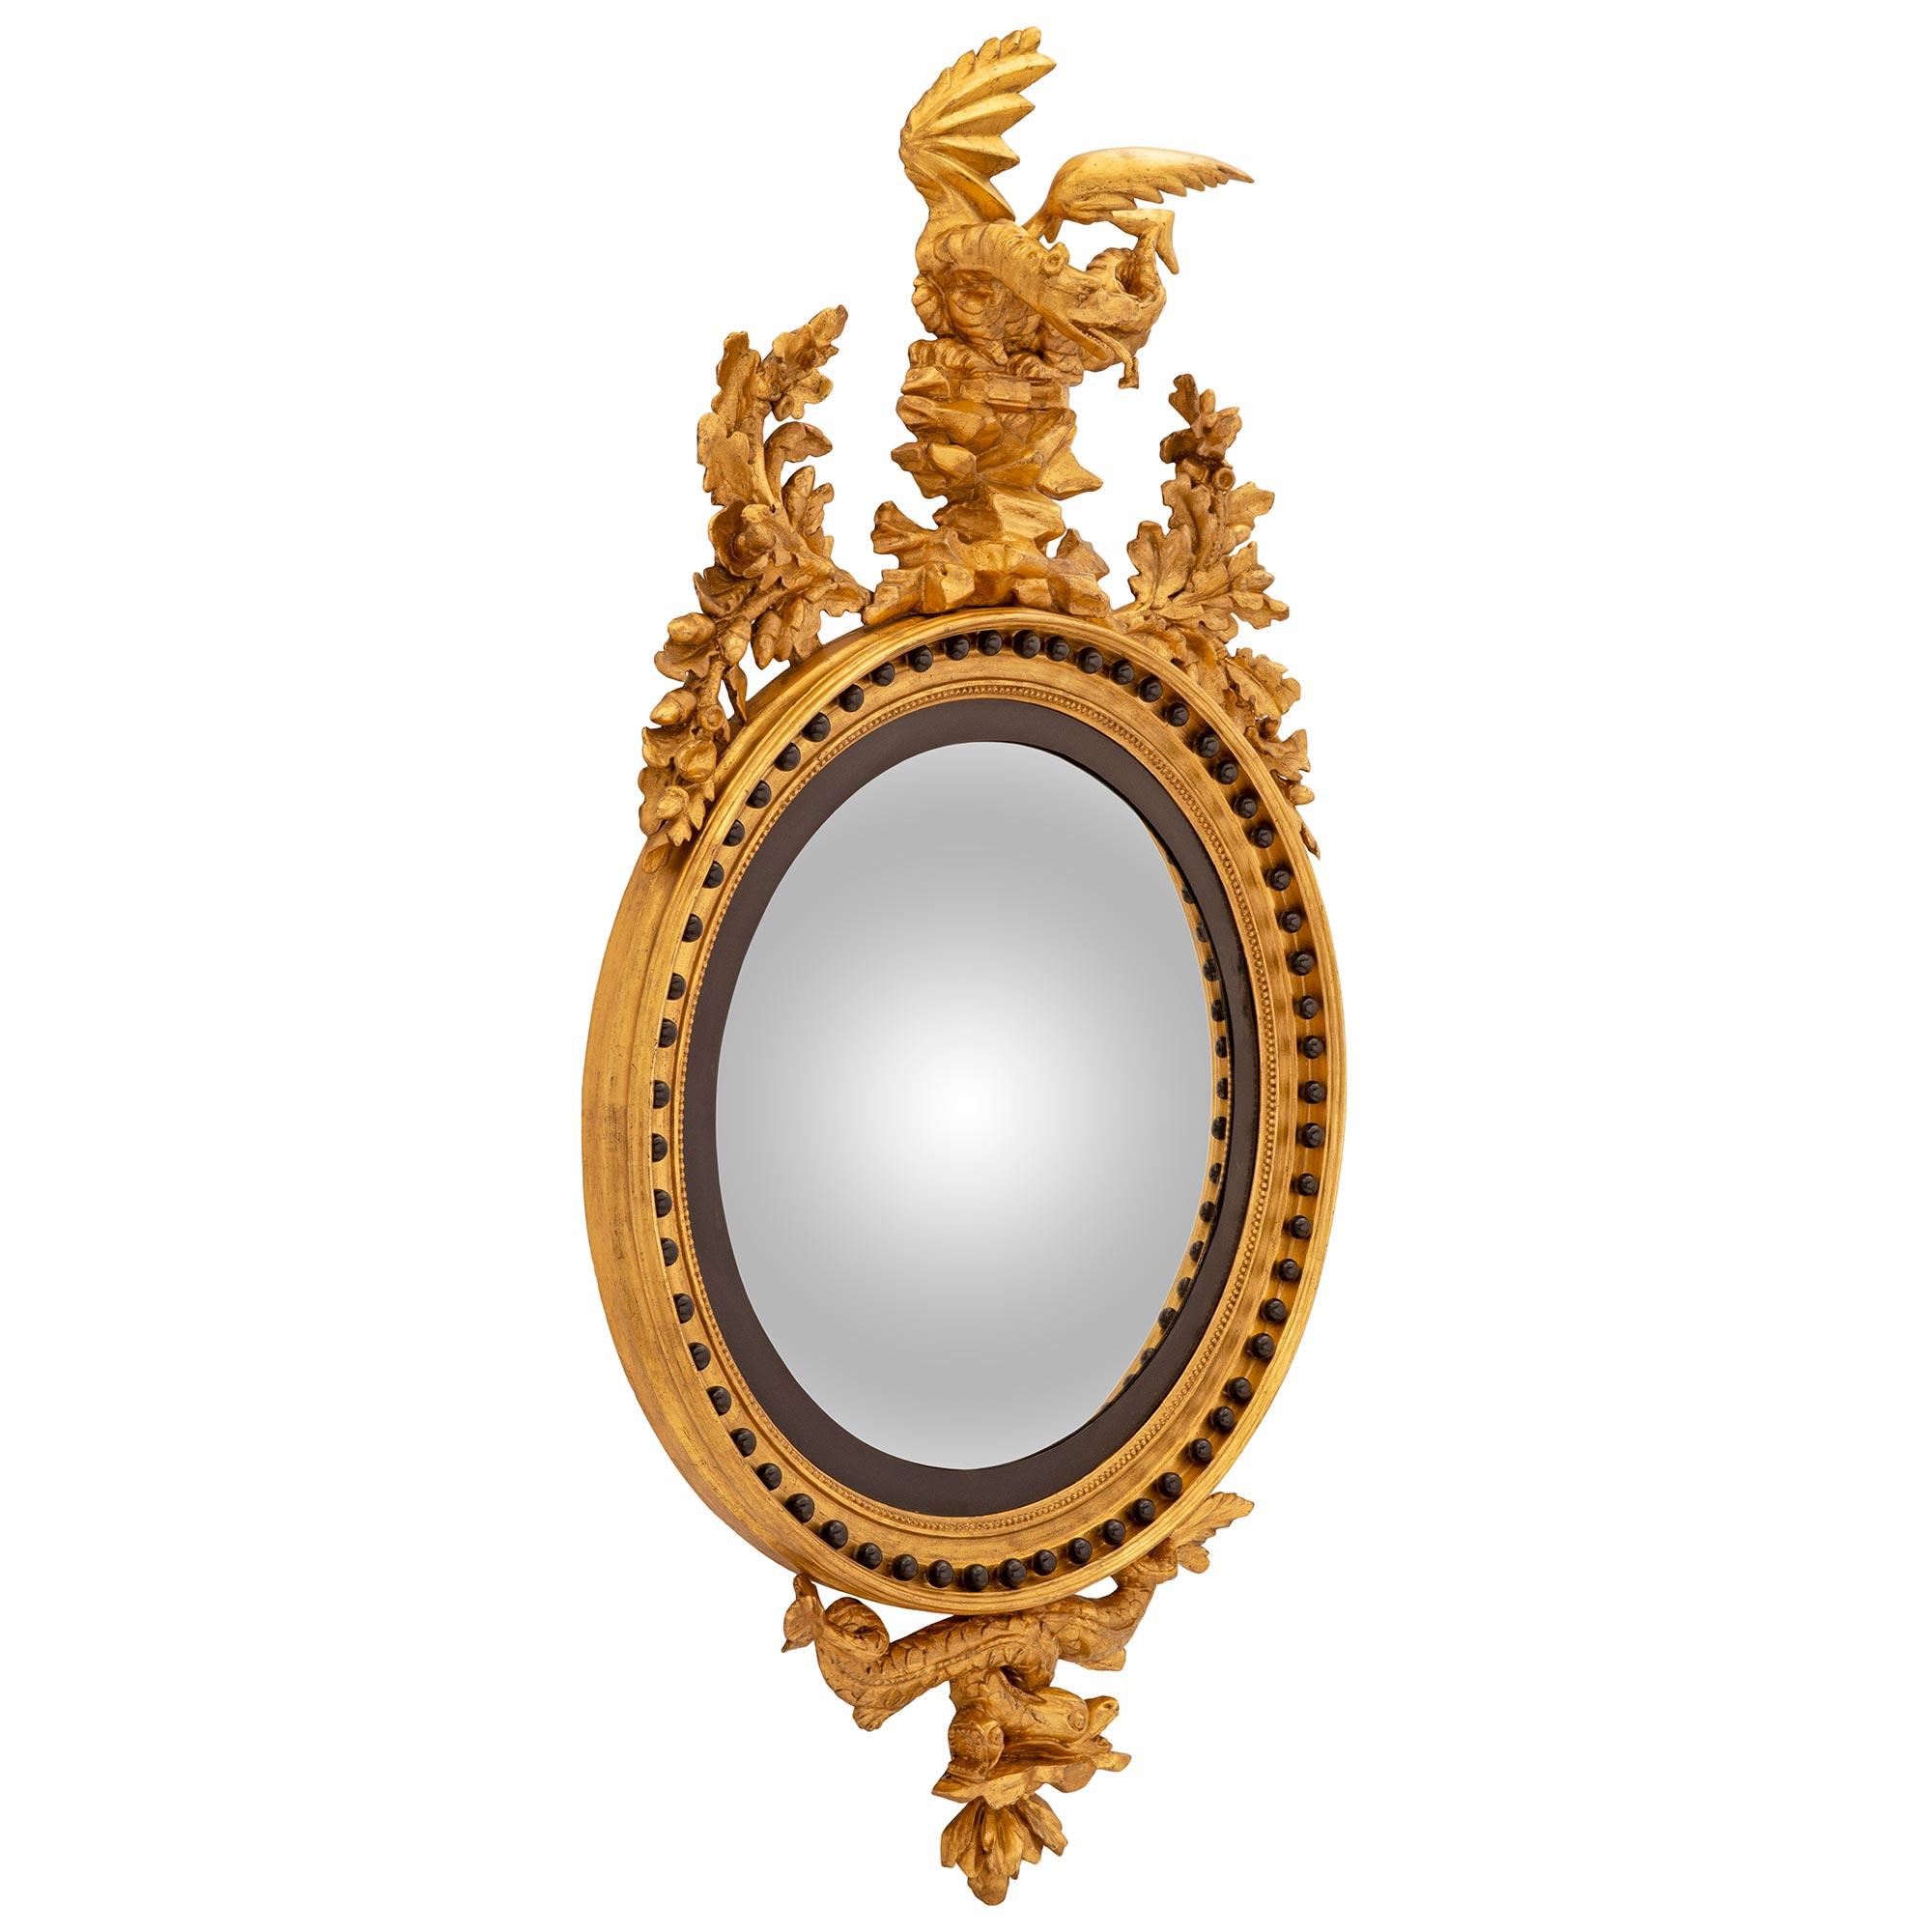 Un étonnant et extrêmement décoratif miroir convexe en bois doré et patiné de style Regency du 19e siècle anglais, étiqueté Thomas Fentham and Co. vers 1830. Le miroir convexe circulaire d'origine est encadré dans une élégante bande patinée et un